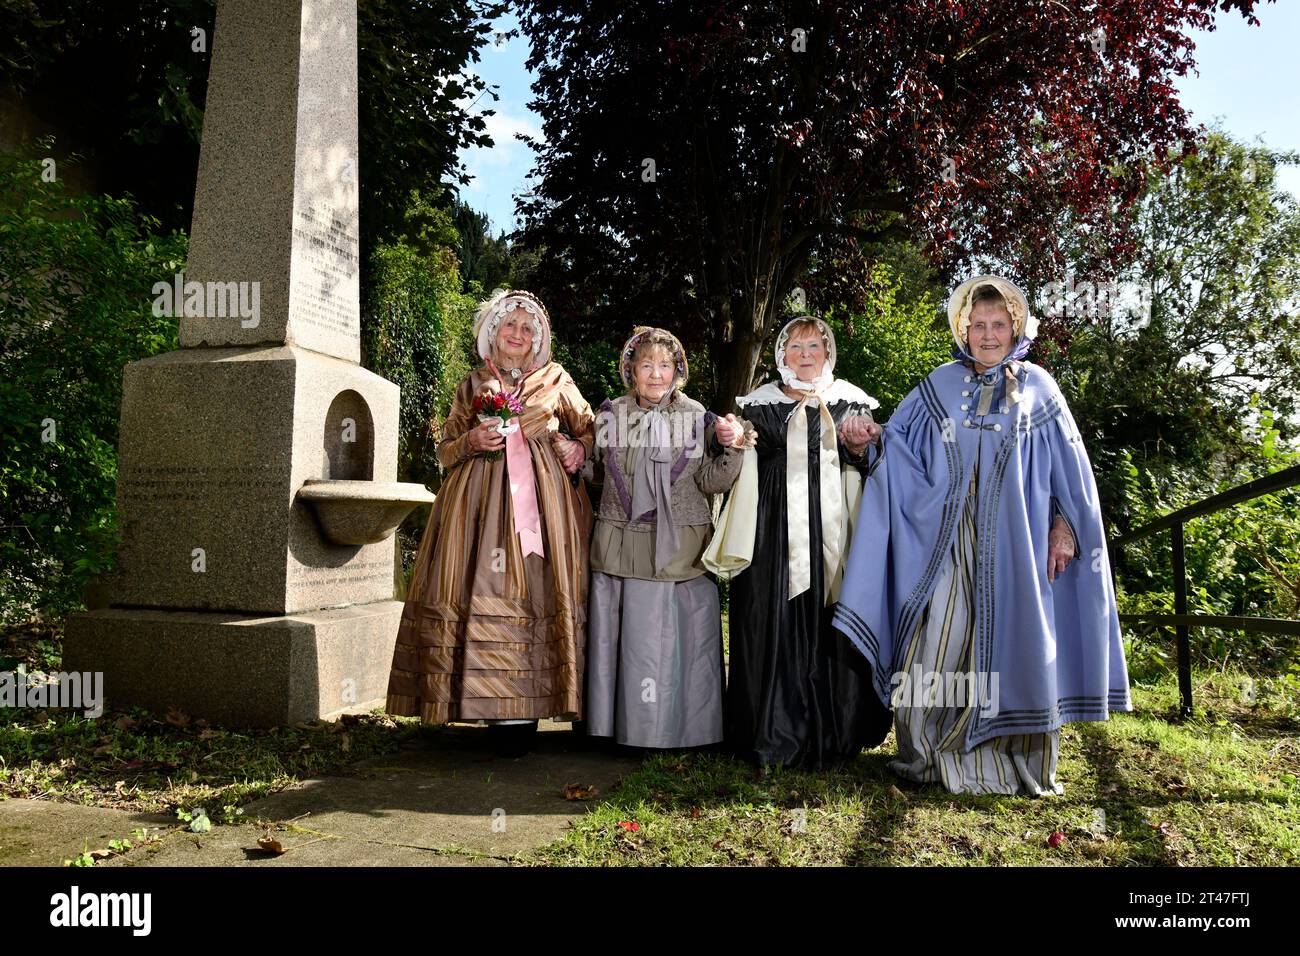 Señoras en trajes de época victoriana en Ironbridge, Shropshire, Patrimonio de la Humanidad de la UNESCO, Inglaterra, Reino Unido. Campaña por la restauración de fuentes. Foto de stock